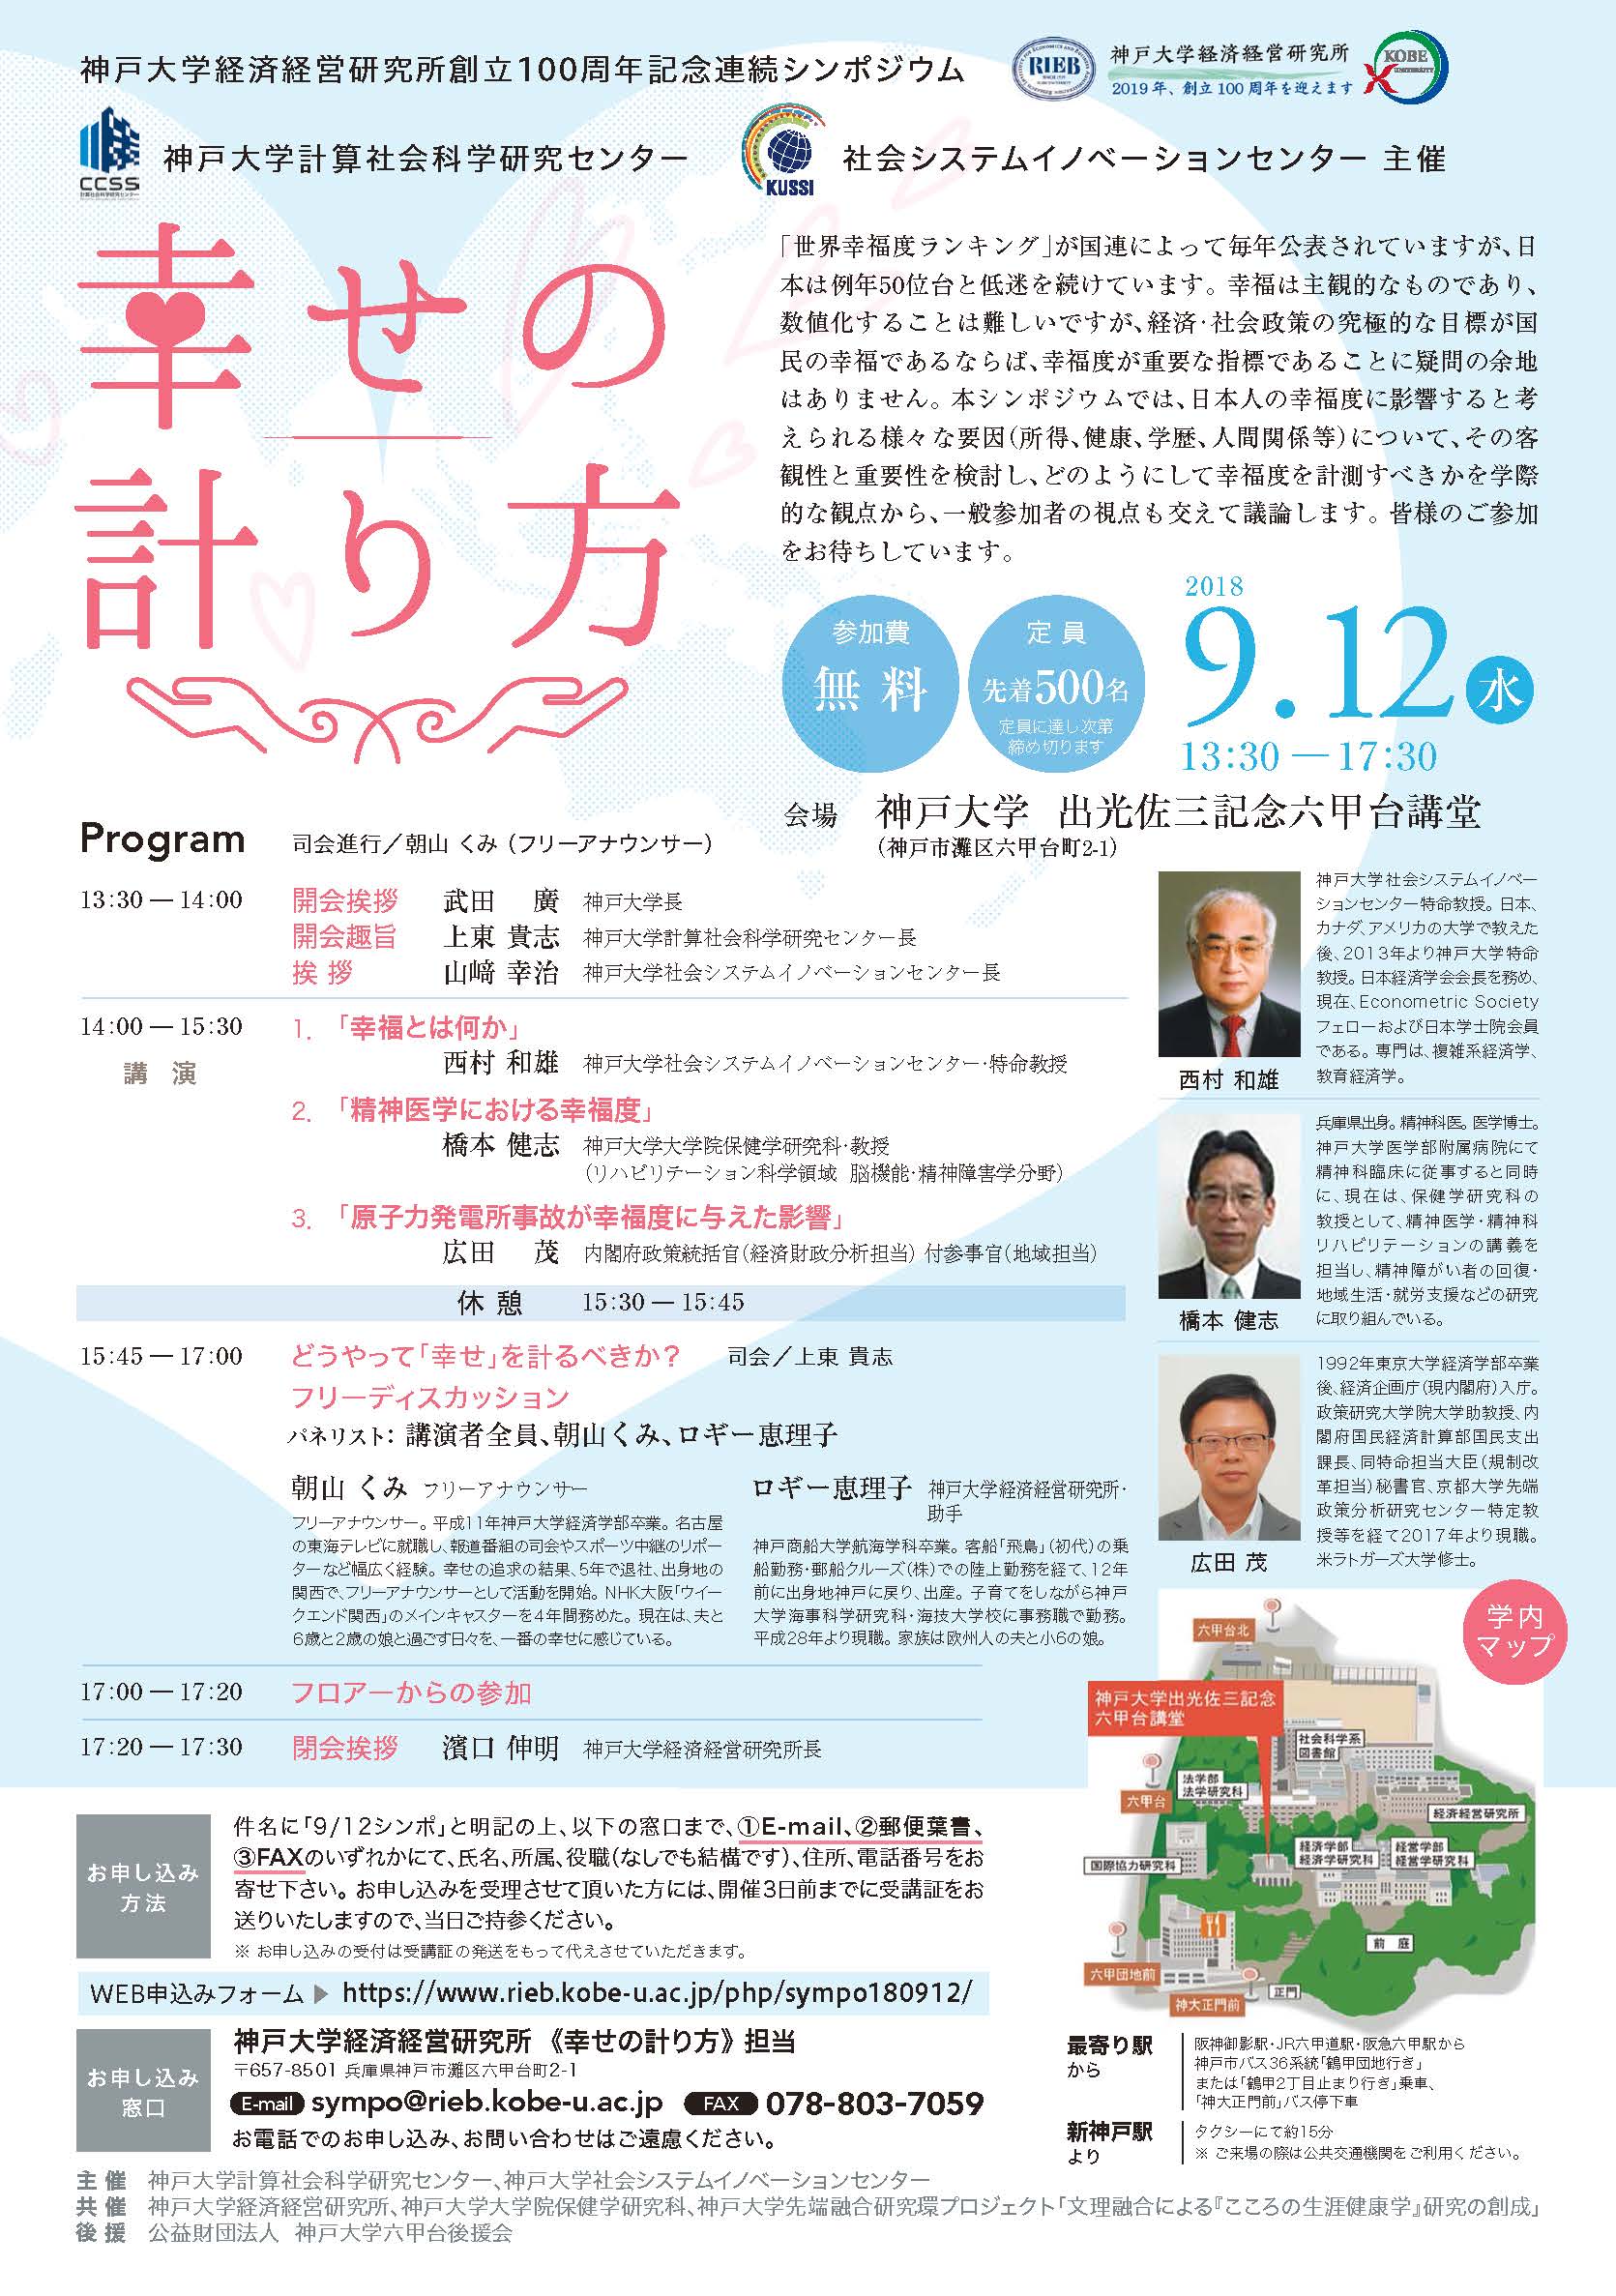 神戸大学経済経営研究所創立100周年記念連続シンポジウム「幸せの計り方」PDF